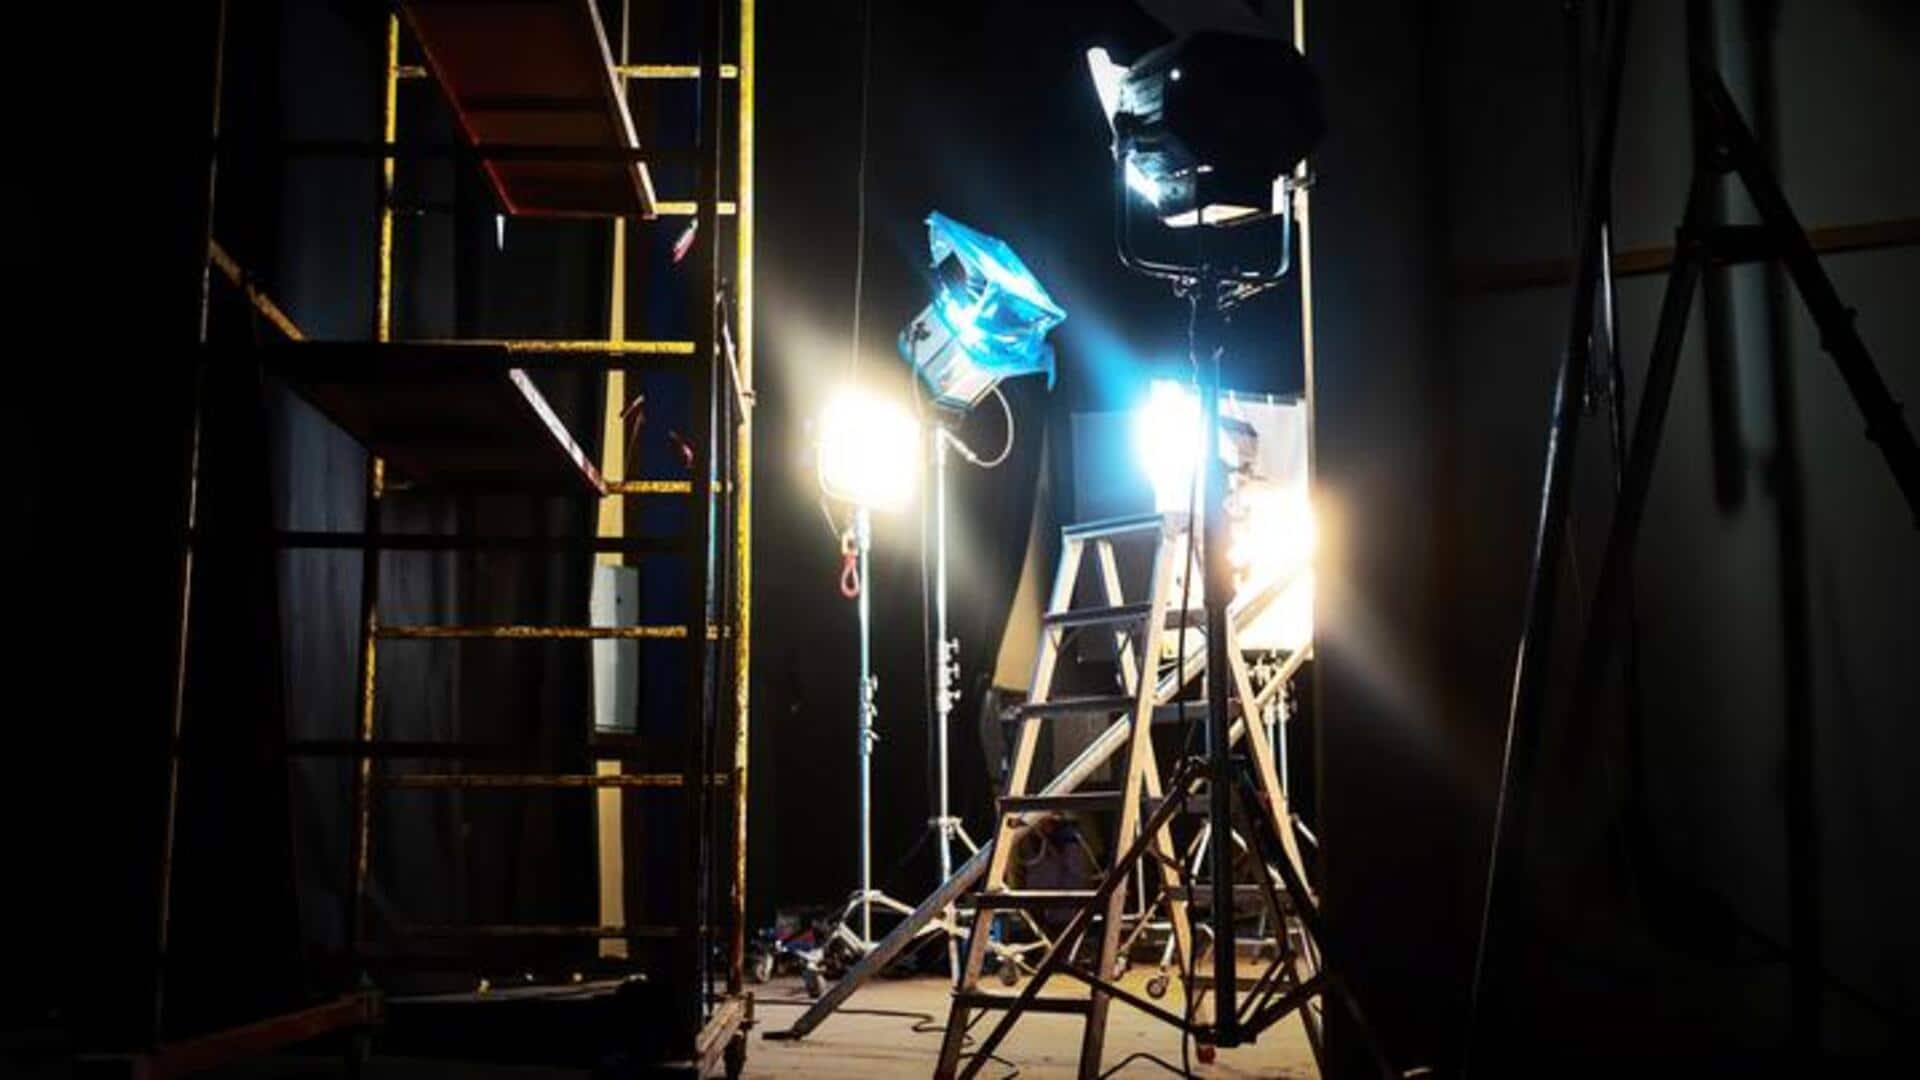 #NewsBytesExplainer: फिल्मों की शूटिंग में अहम भूमिका निभाता है लाइटिंग विभाग, जानिए कैसे करता है काम